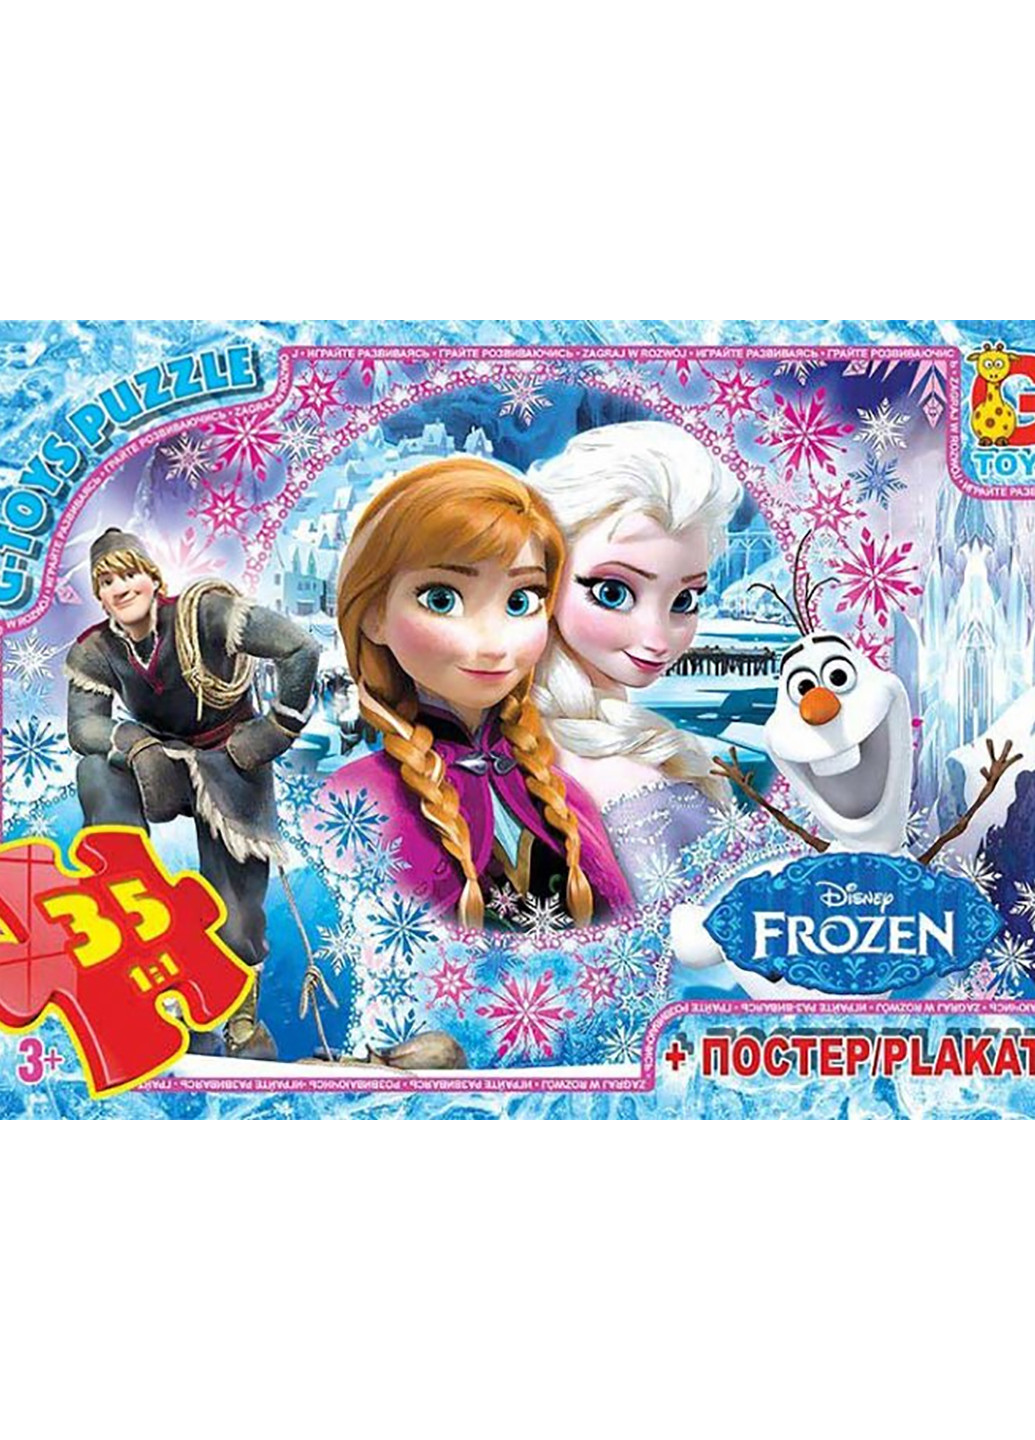 Пазл из серии "Frozen" (Ледовое сердце) G-Toys fr012 (255334882)